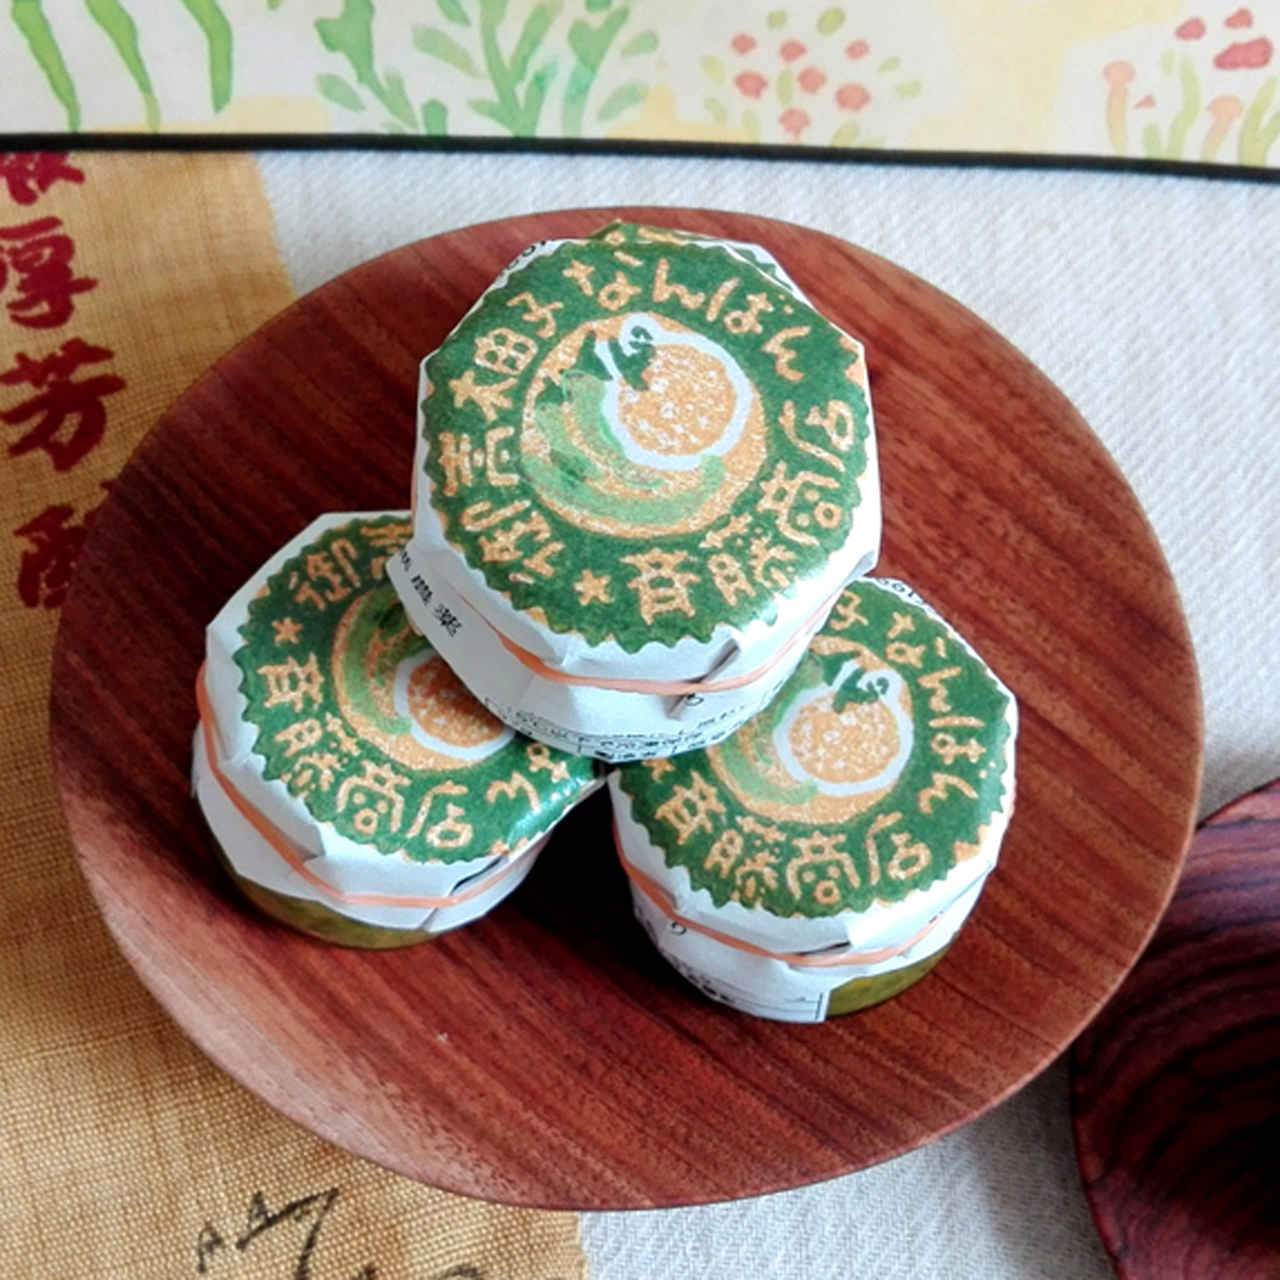 岐阜県産の無農薬材料にこだわったオリジナル柚子胡椒「御嵩柚子なんばん」です。</br>
材料は全て無農薬材料使用、化学調味料、保存料、着色料などは一切使用していません。